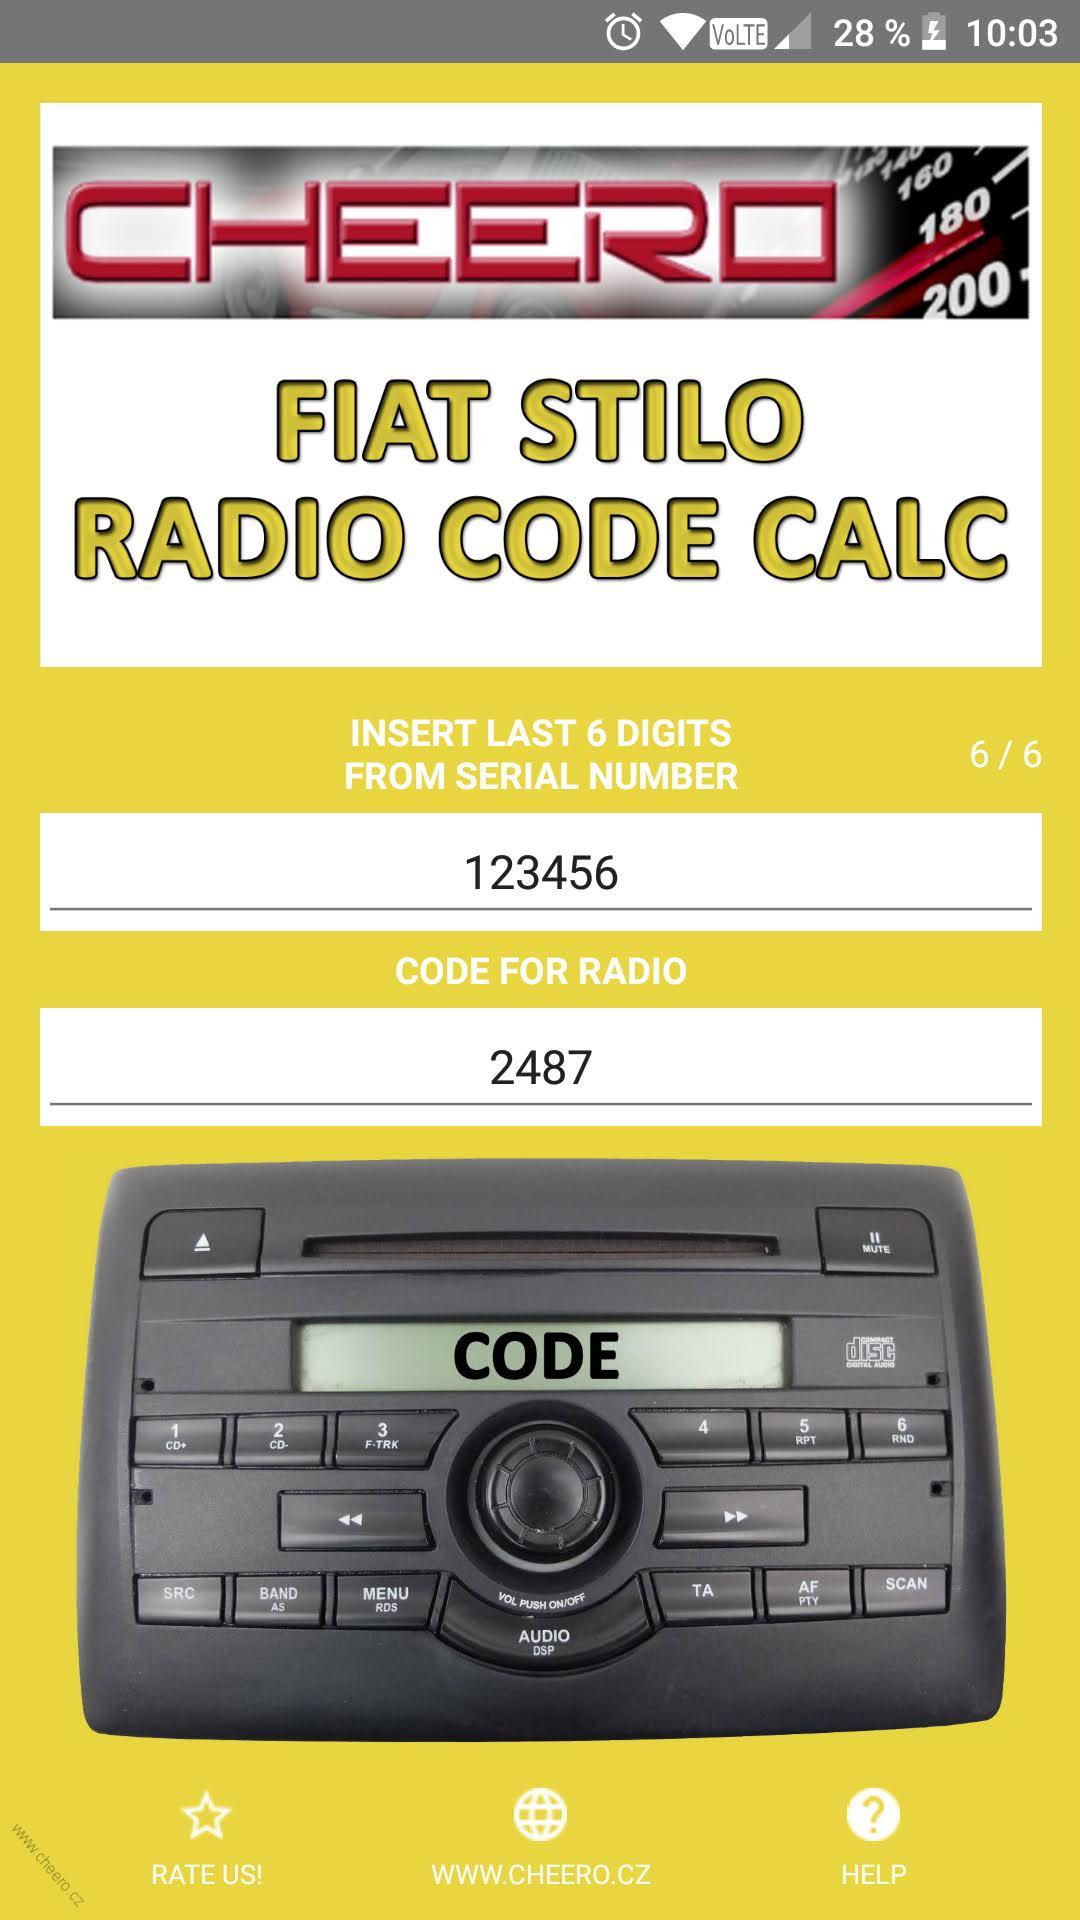 FIAT STILO RADIO CODE CALC